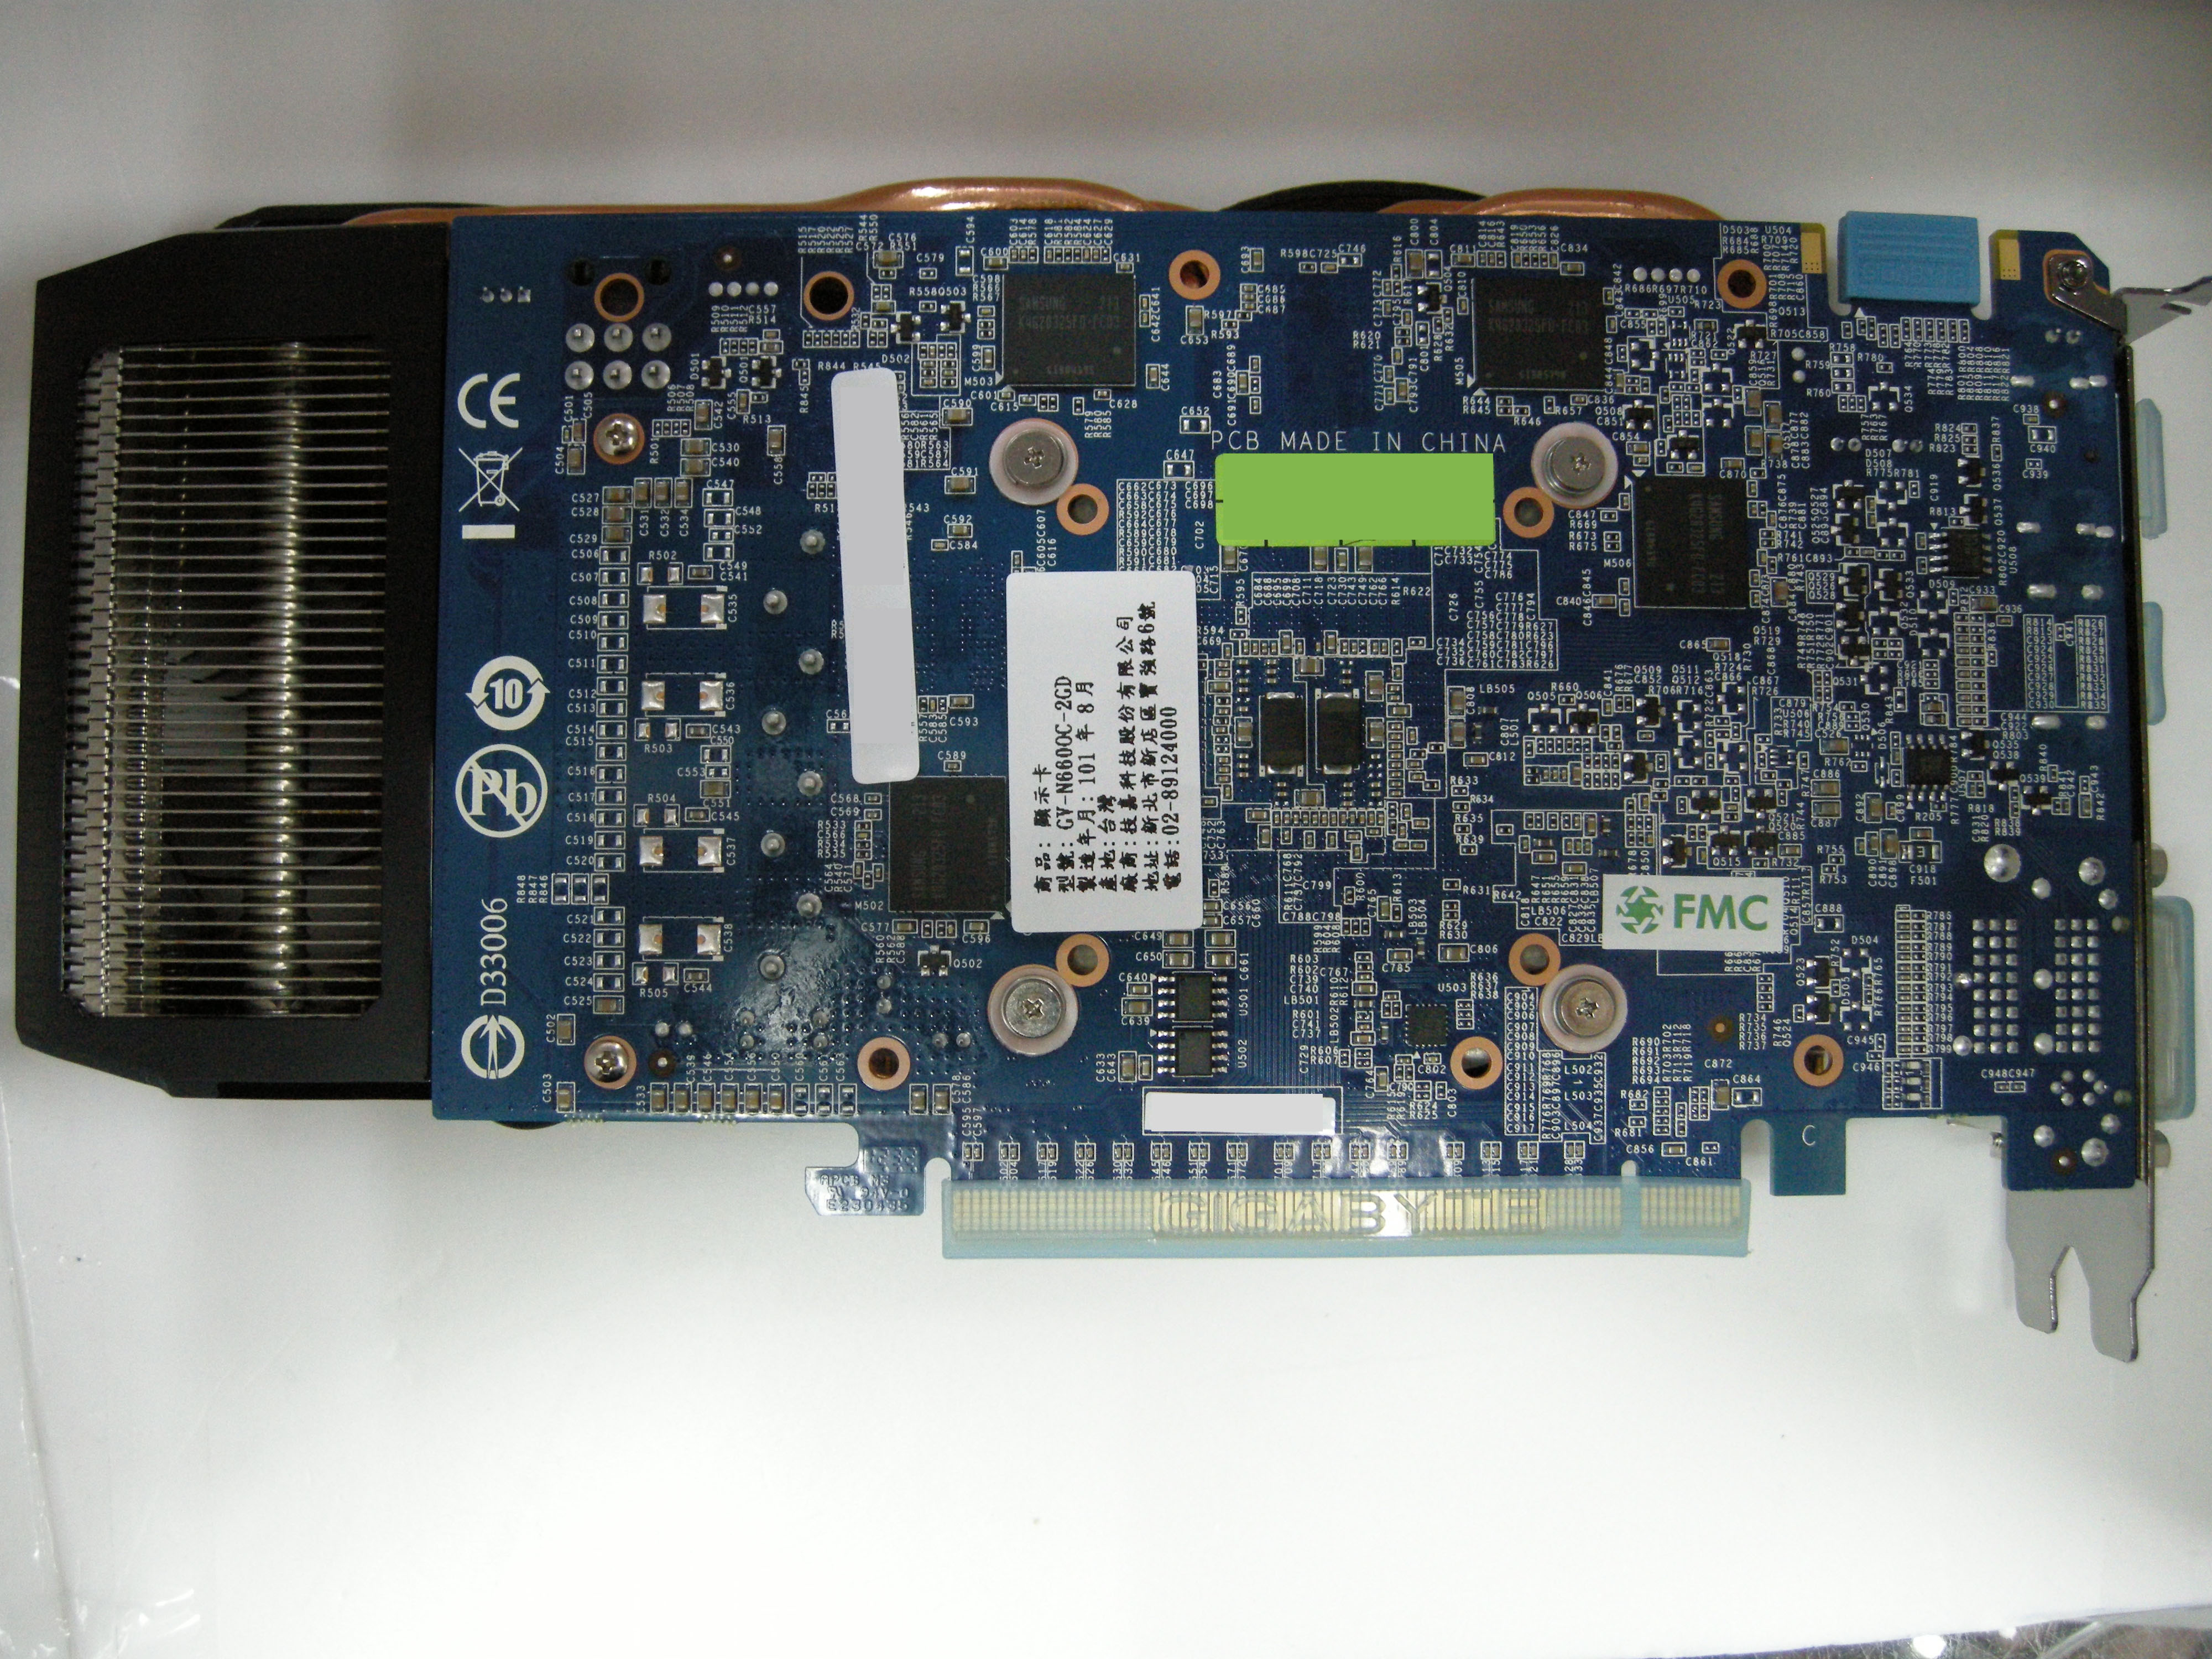 DSCN5252.JPG - 1.63 MB